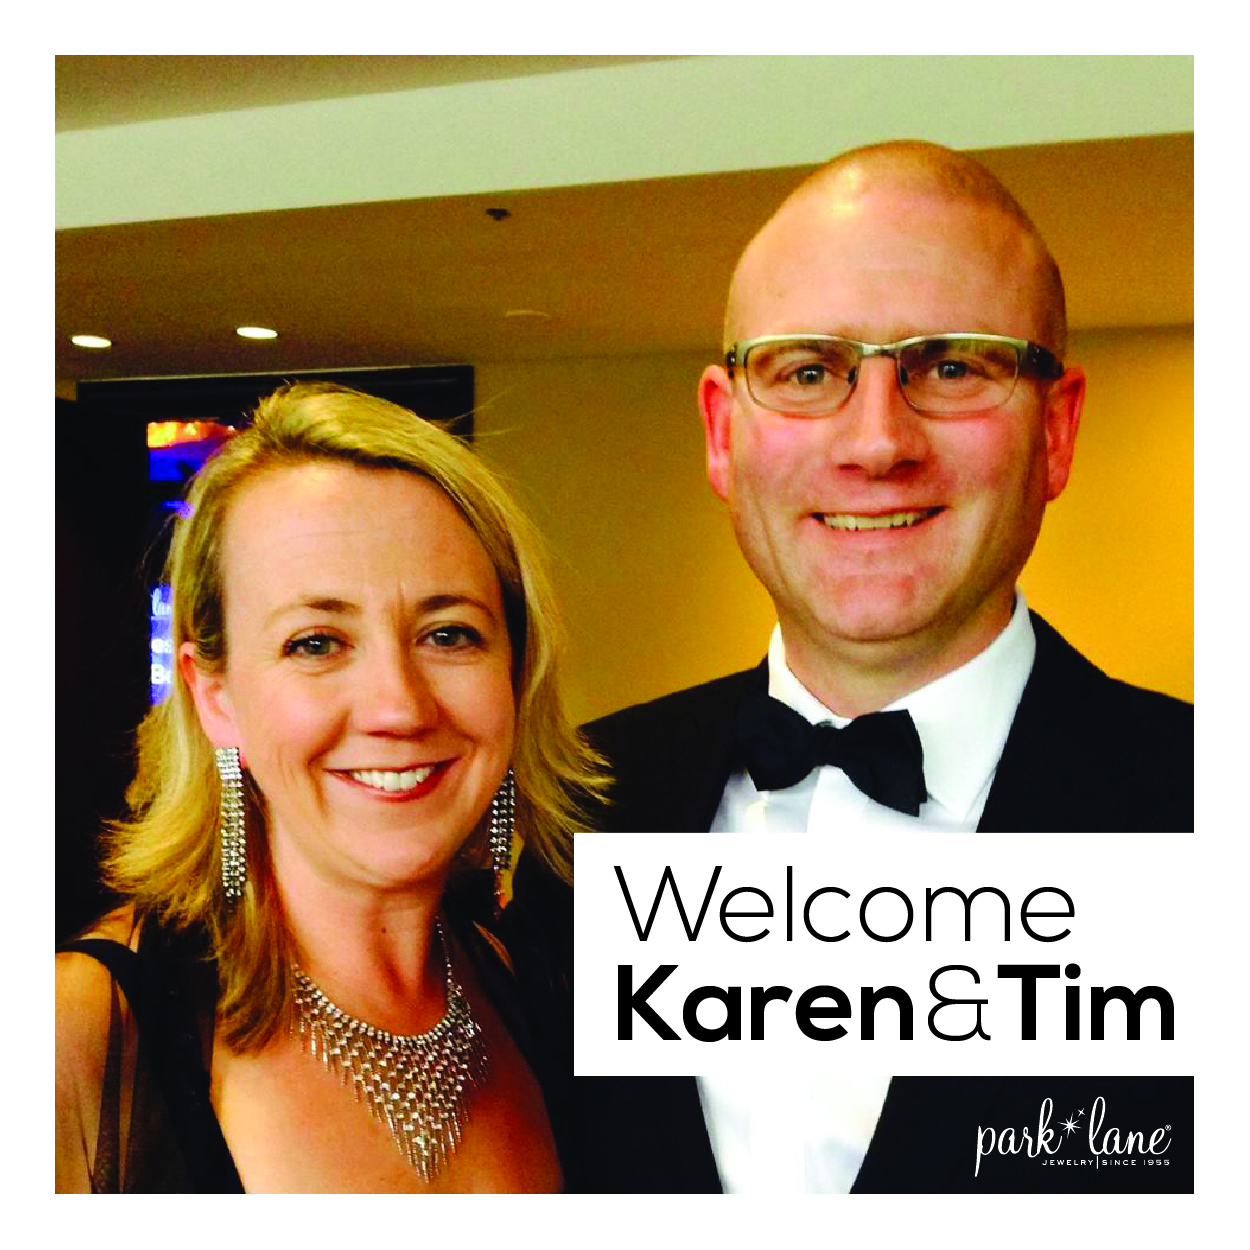 Park Lane welcomes Karen & Tim! 